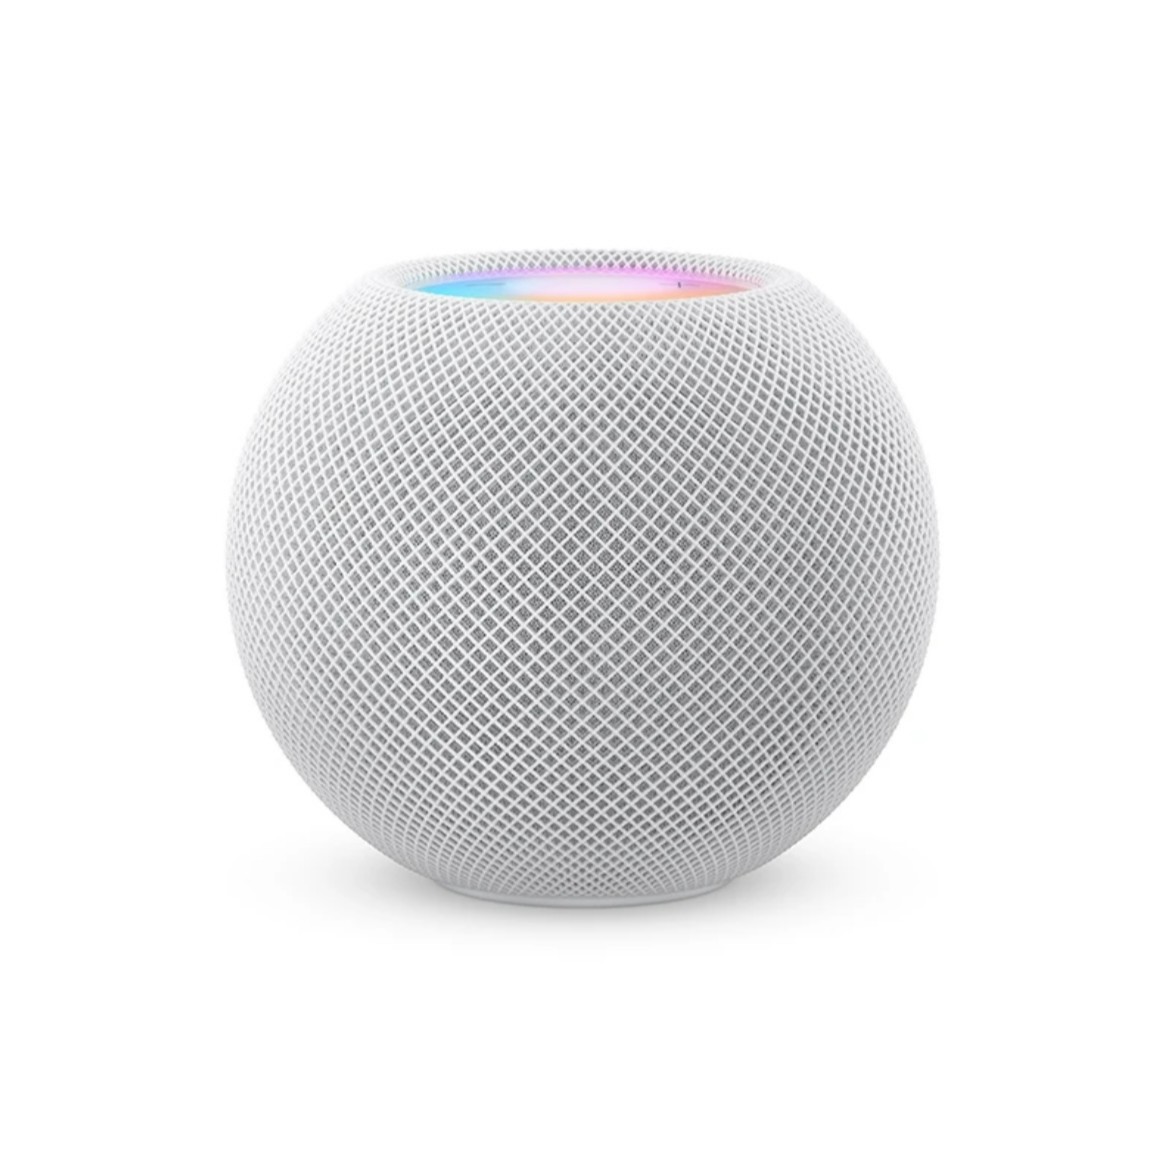 准新品Apple/苹果Apple HomePod mini 智能音箱立体声云蚂蚁_二手商品